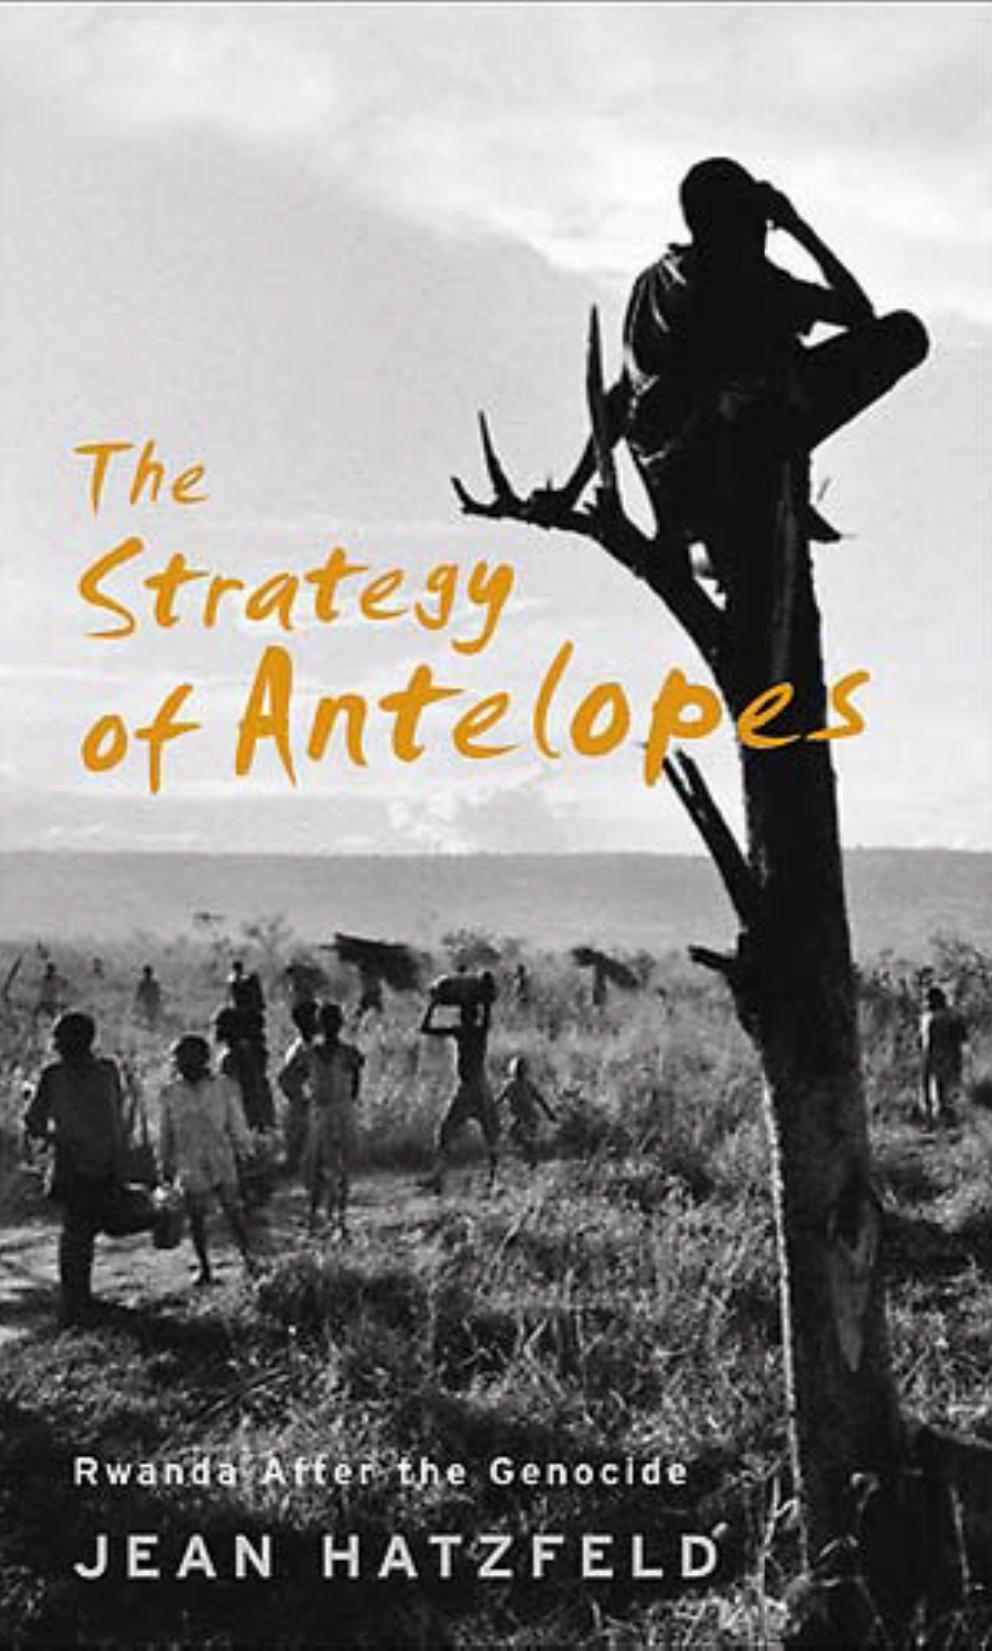 The Strategy of Antelopes by Jean Hatzfeld